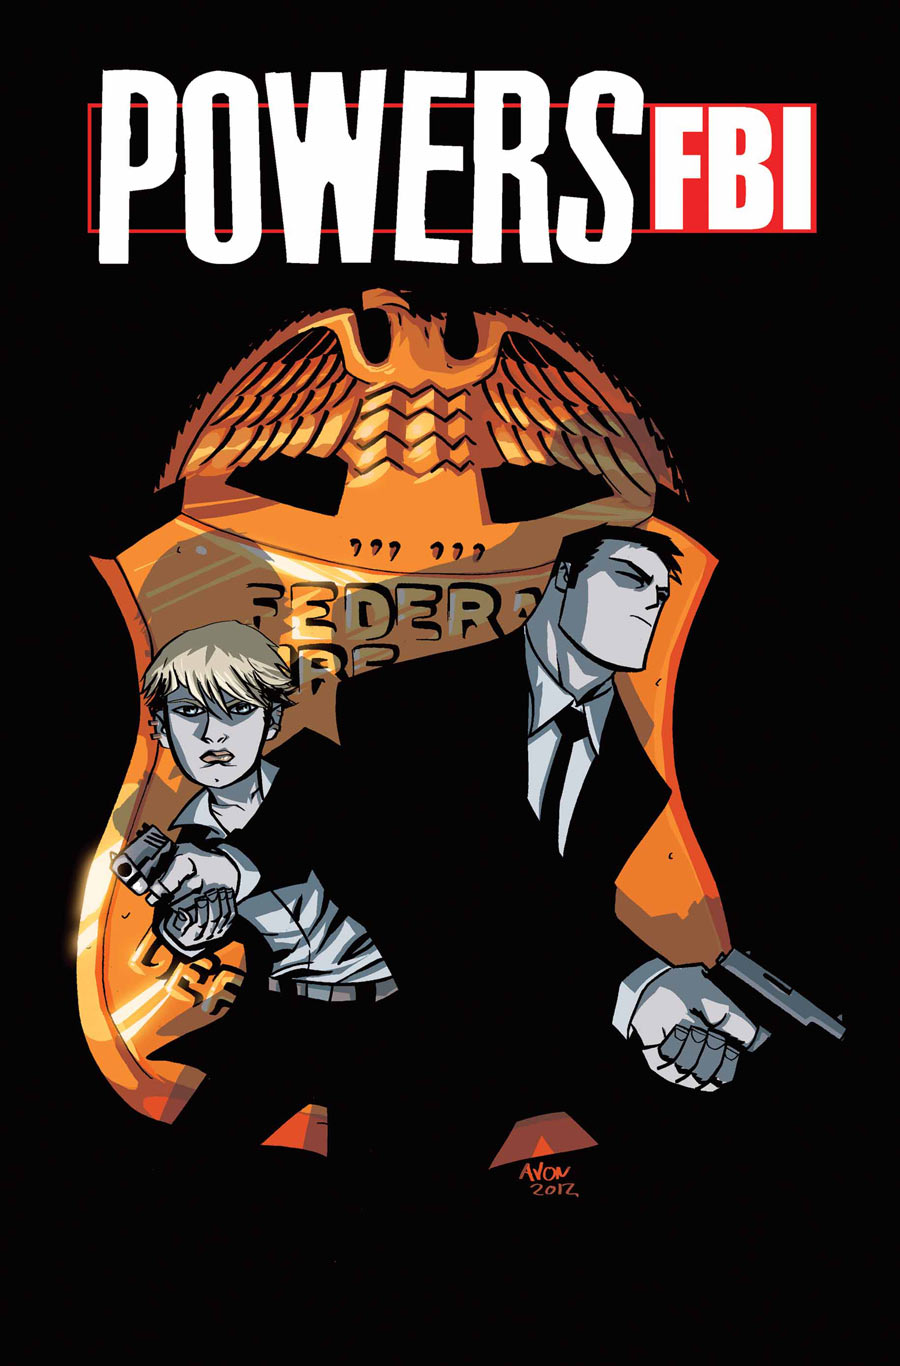 Powers Fbi #13